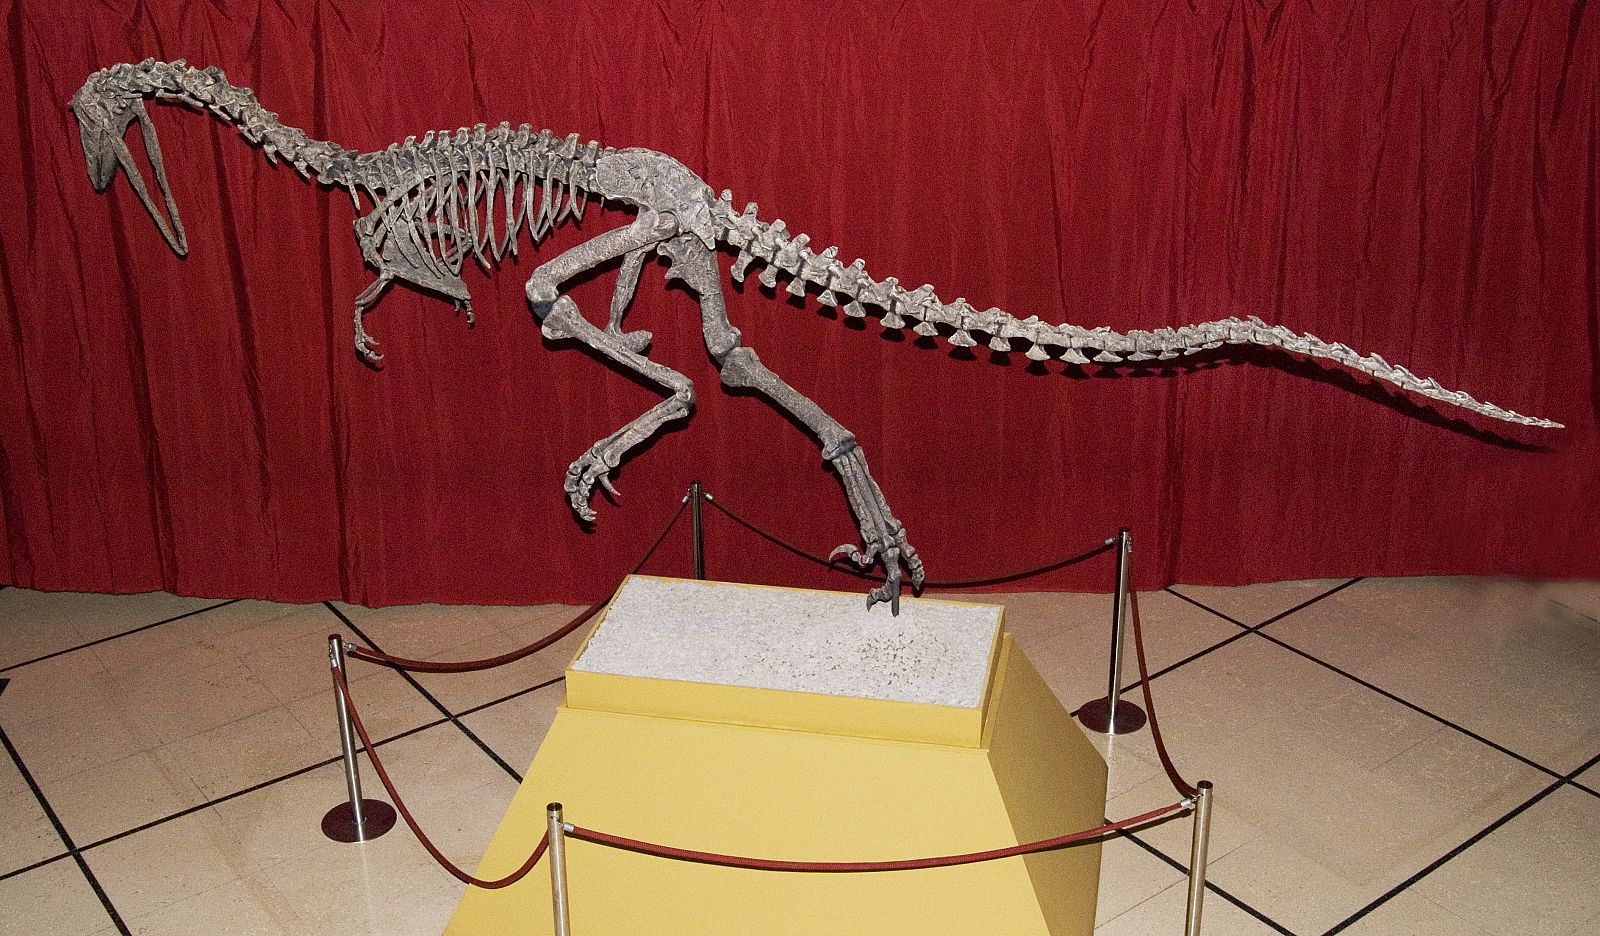 Reconstrucción del Austroraptor, una especie de dinosaurio que vivió en la zona de la Patagonia